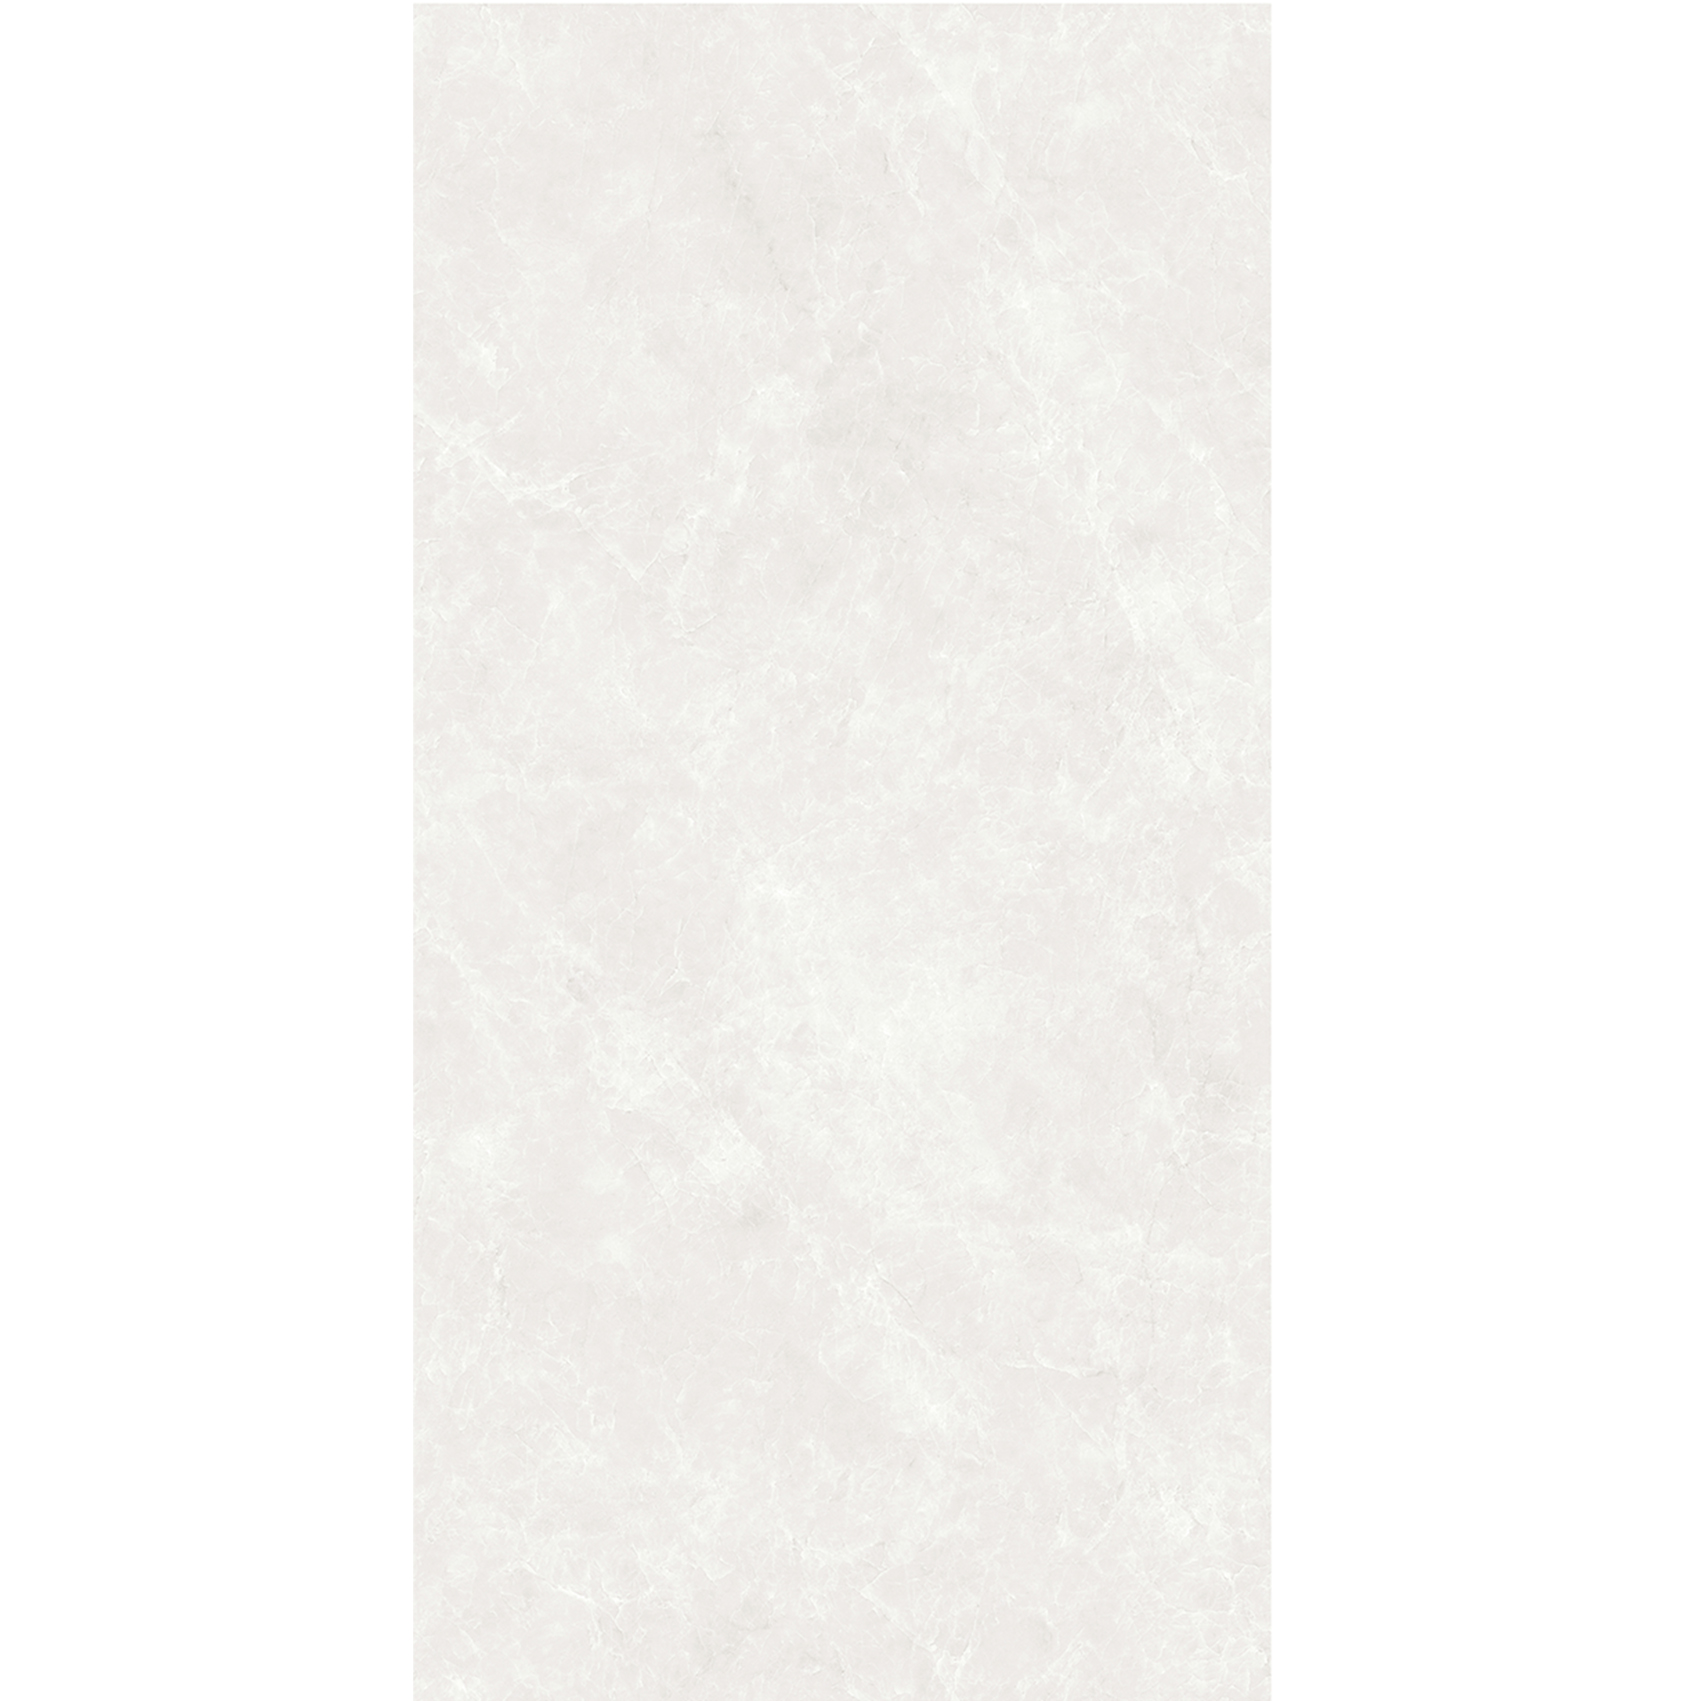 Wall Tiles For Shower VS18987